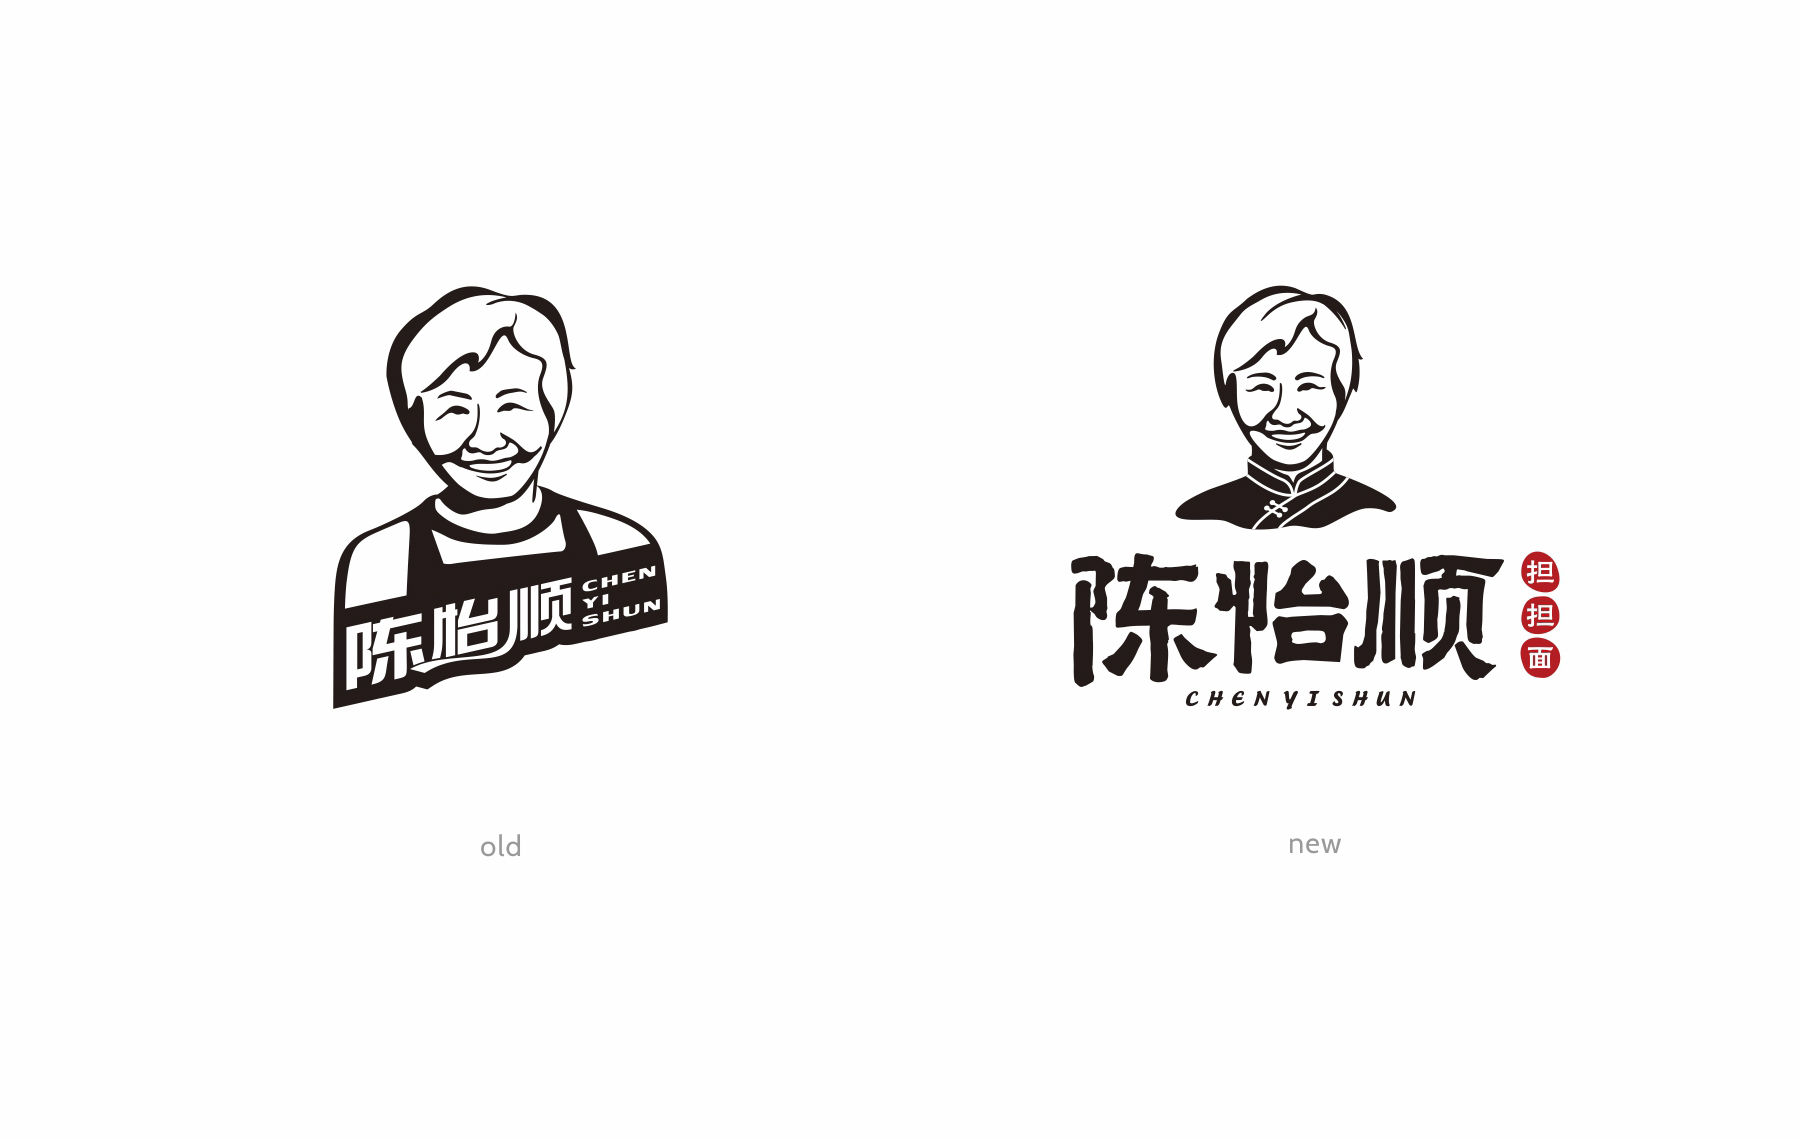 陈怡顺餐饮品牌logo设计新旧对比